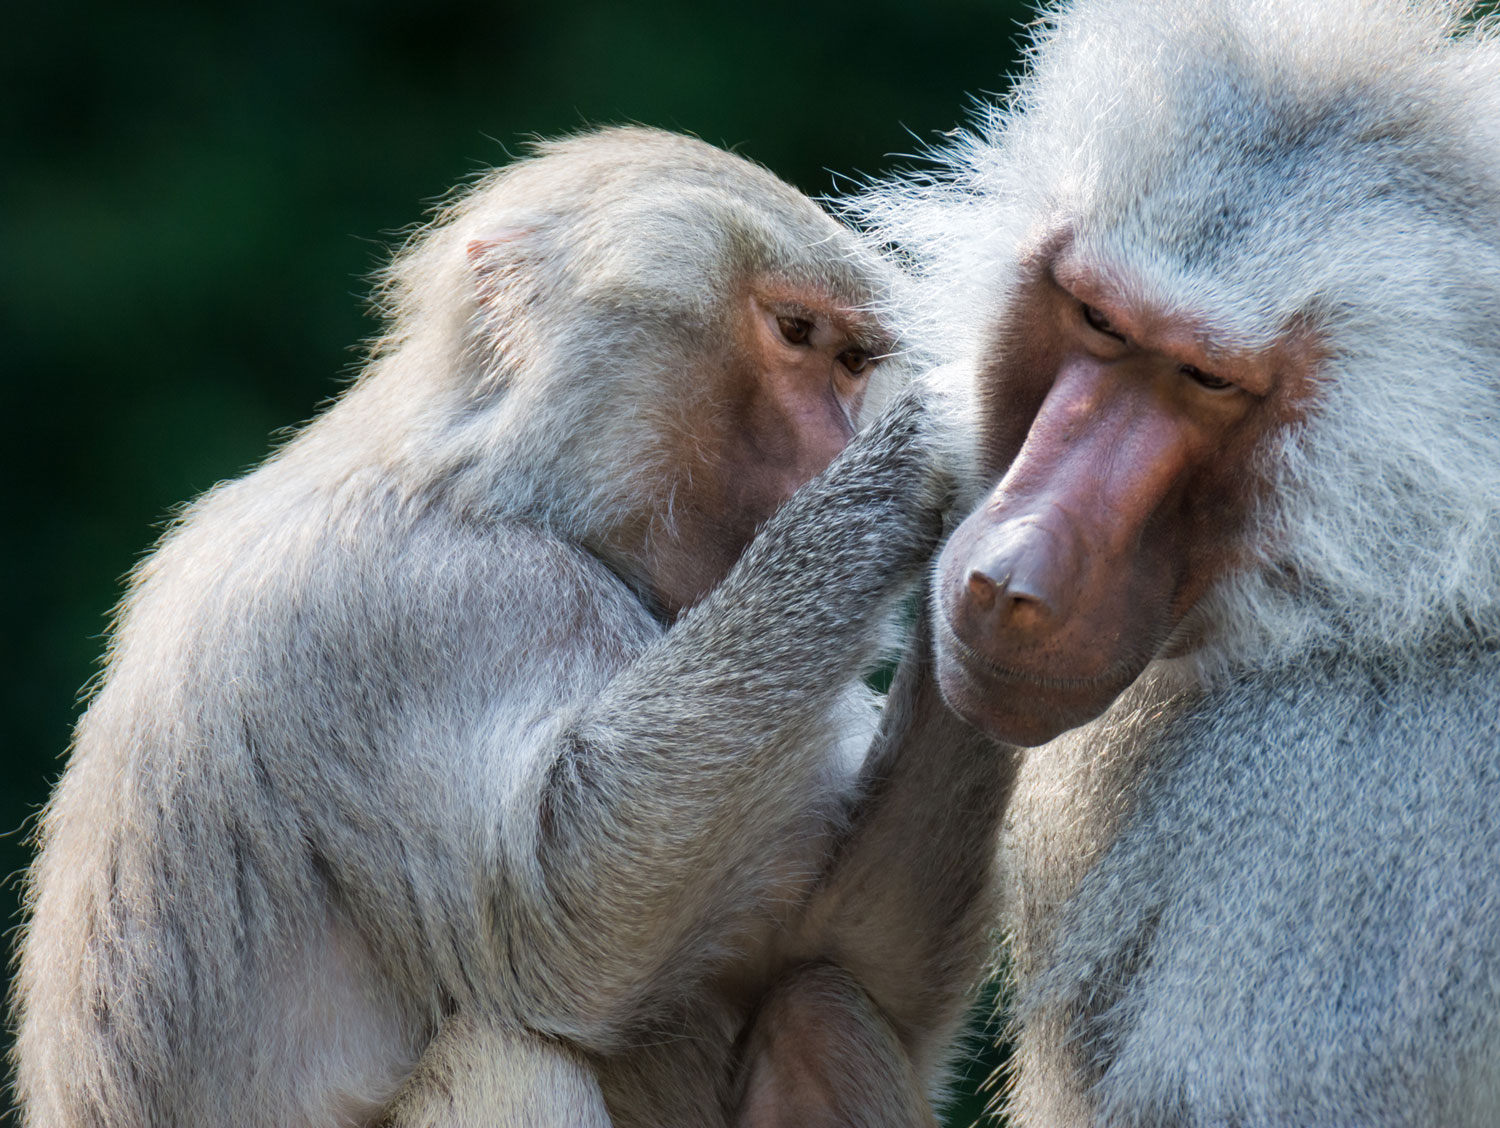 grooming-baboon-monkeys-2021-08-26-22-31-18-utc.jpg